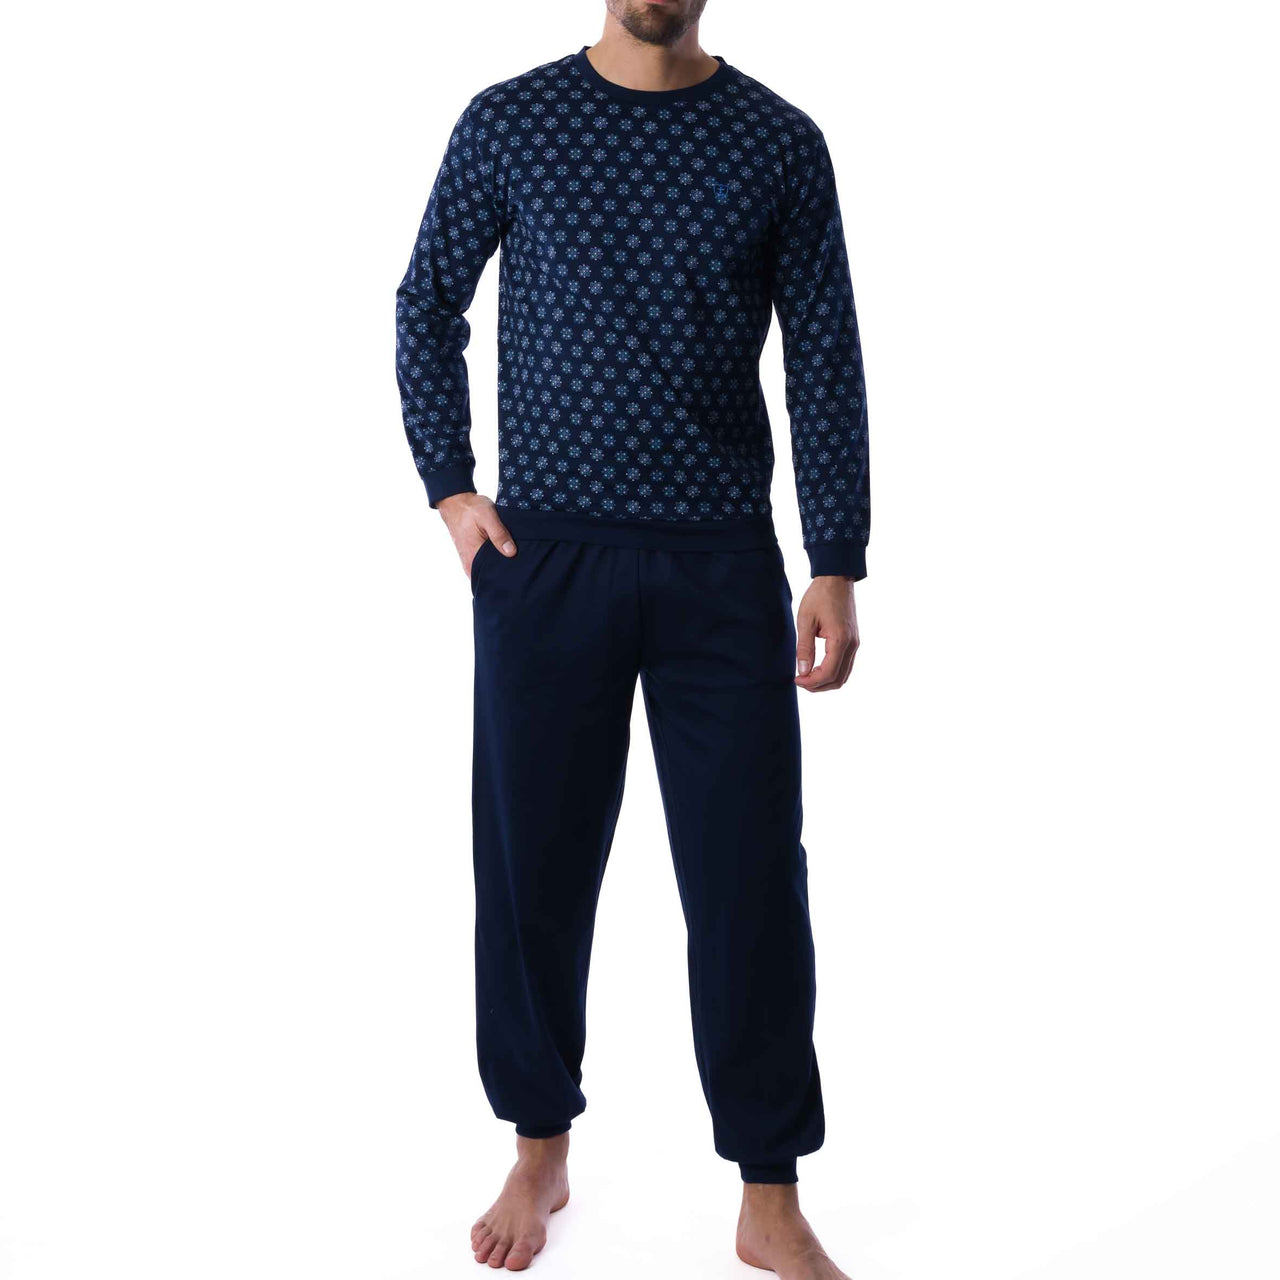 Pyjama Forme Jogging en Jersey de Coton Mercerisé Imprimé Bleu Marine